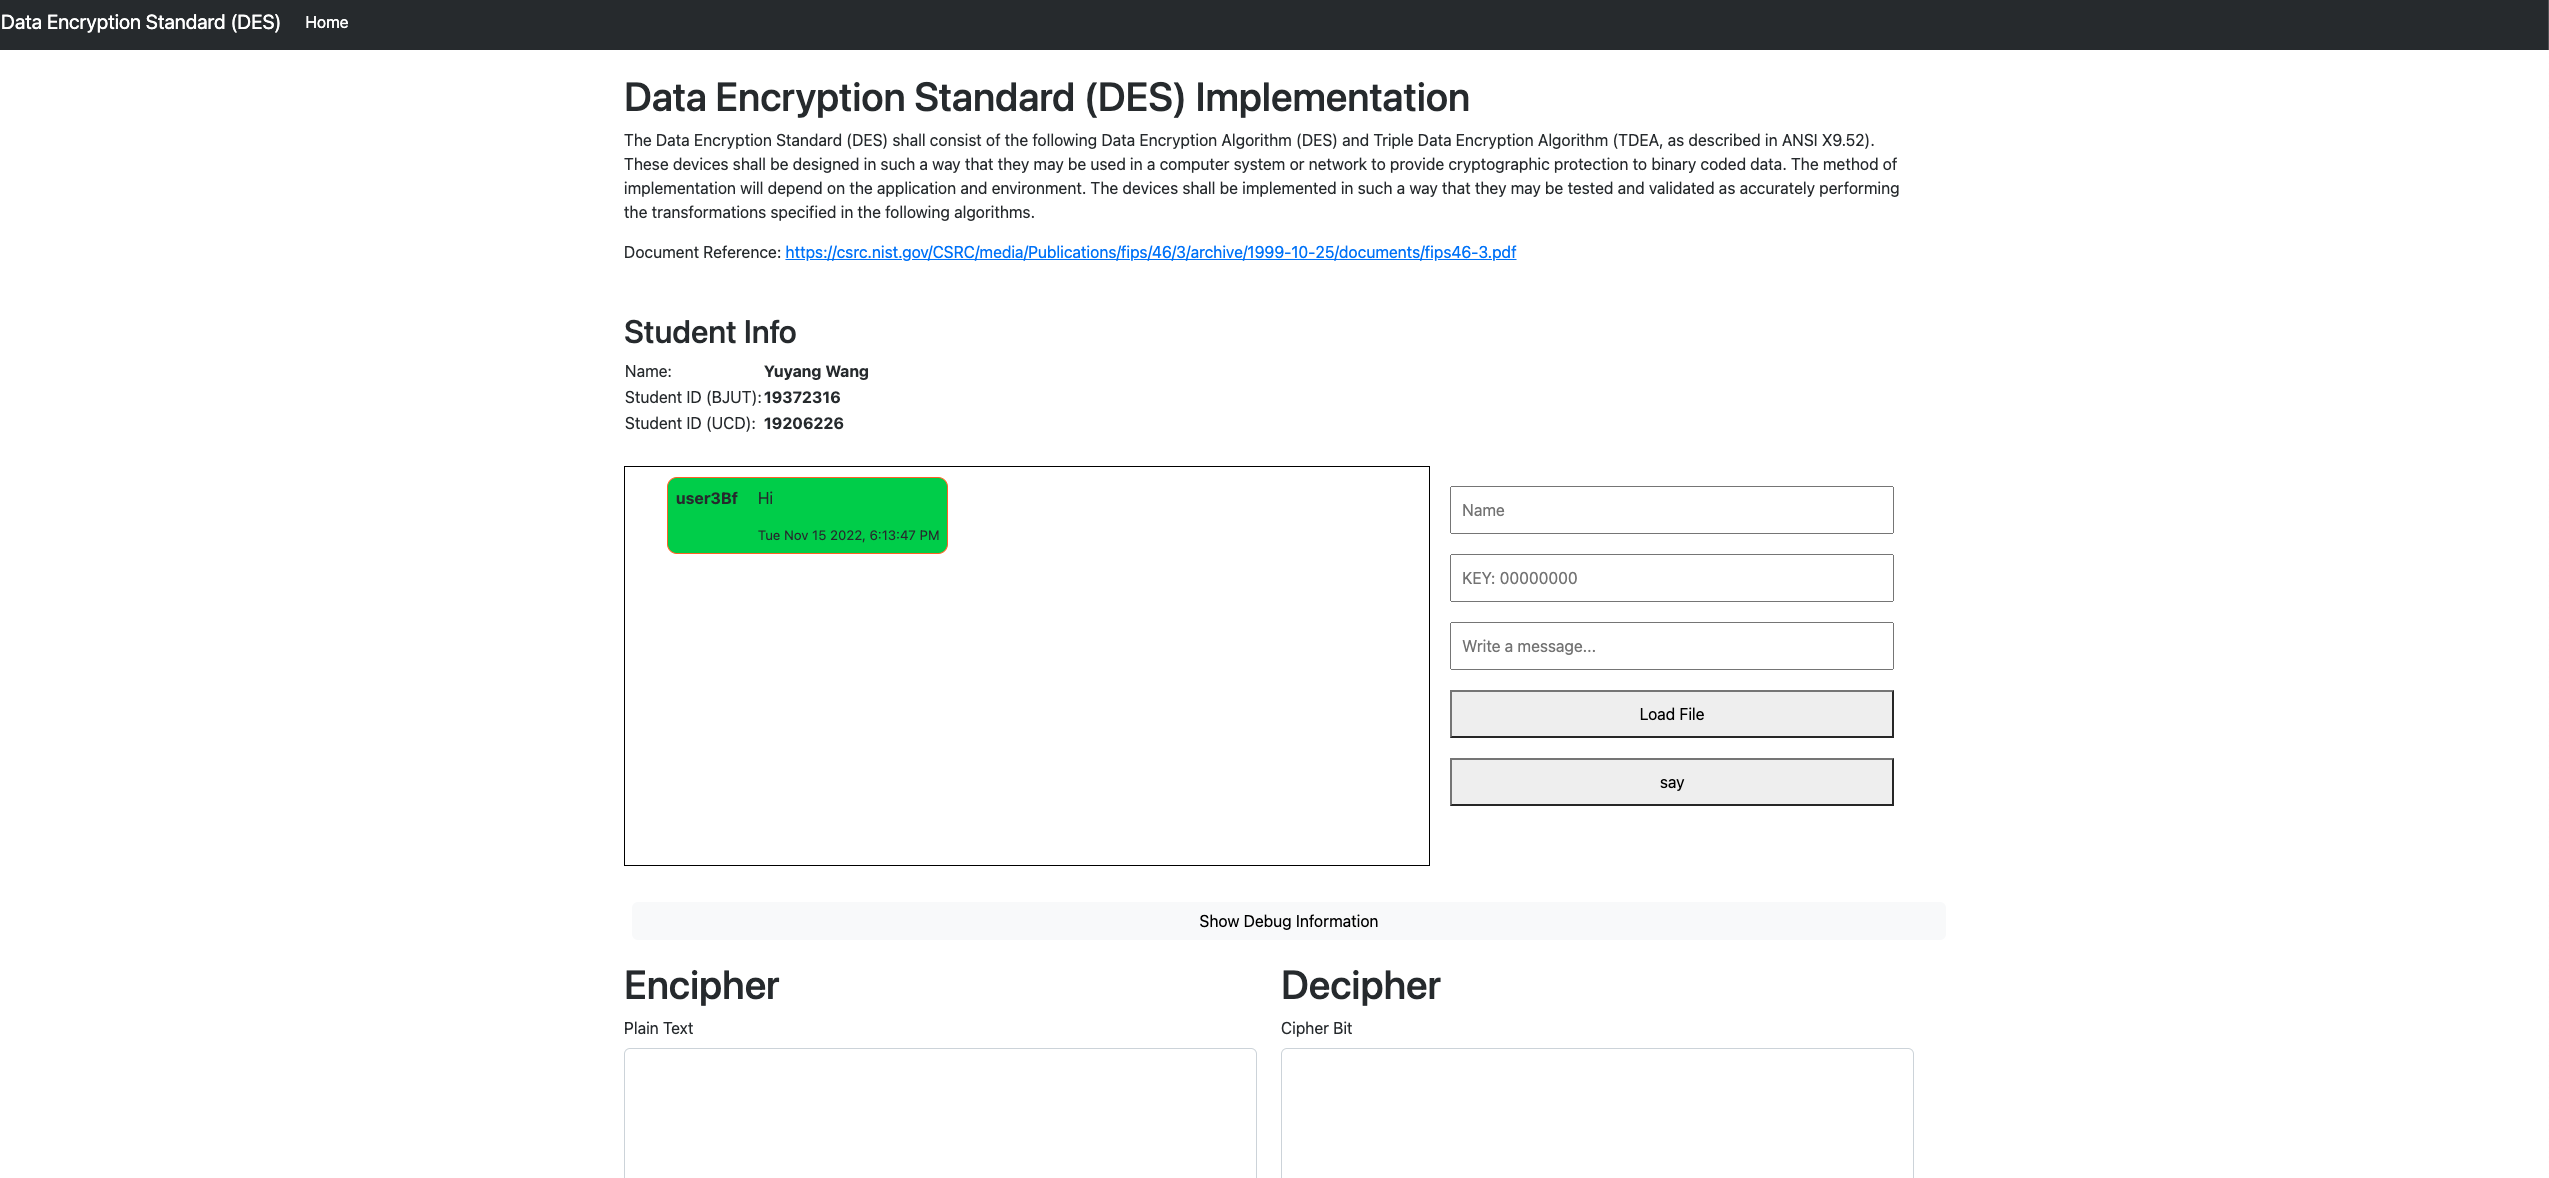 Data Encryption Standard (DES) based Secure Communication Application